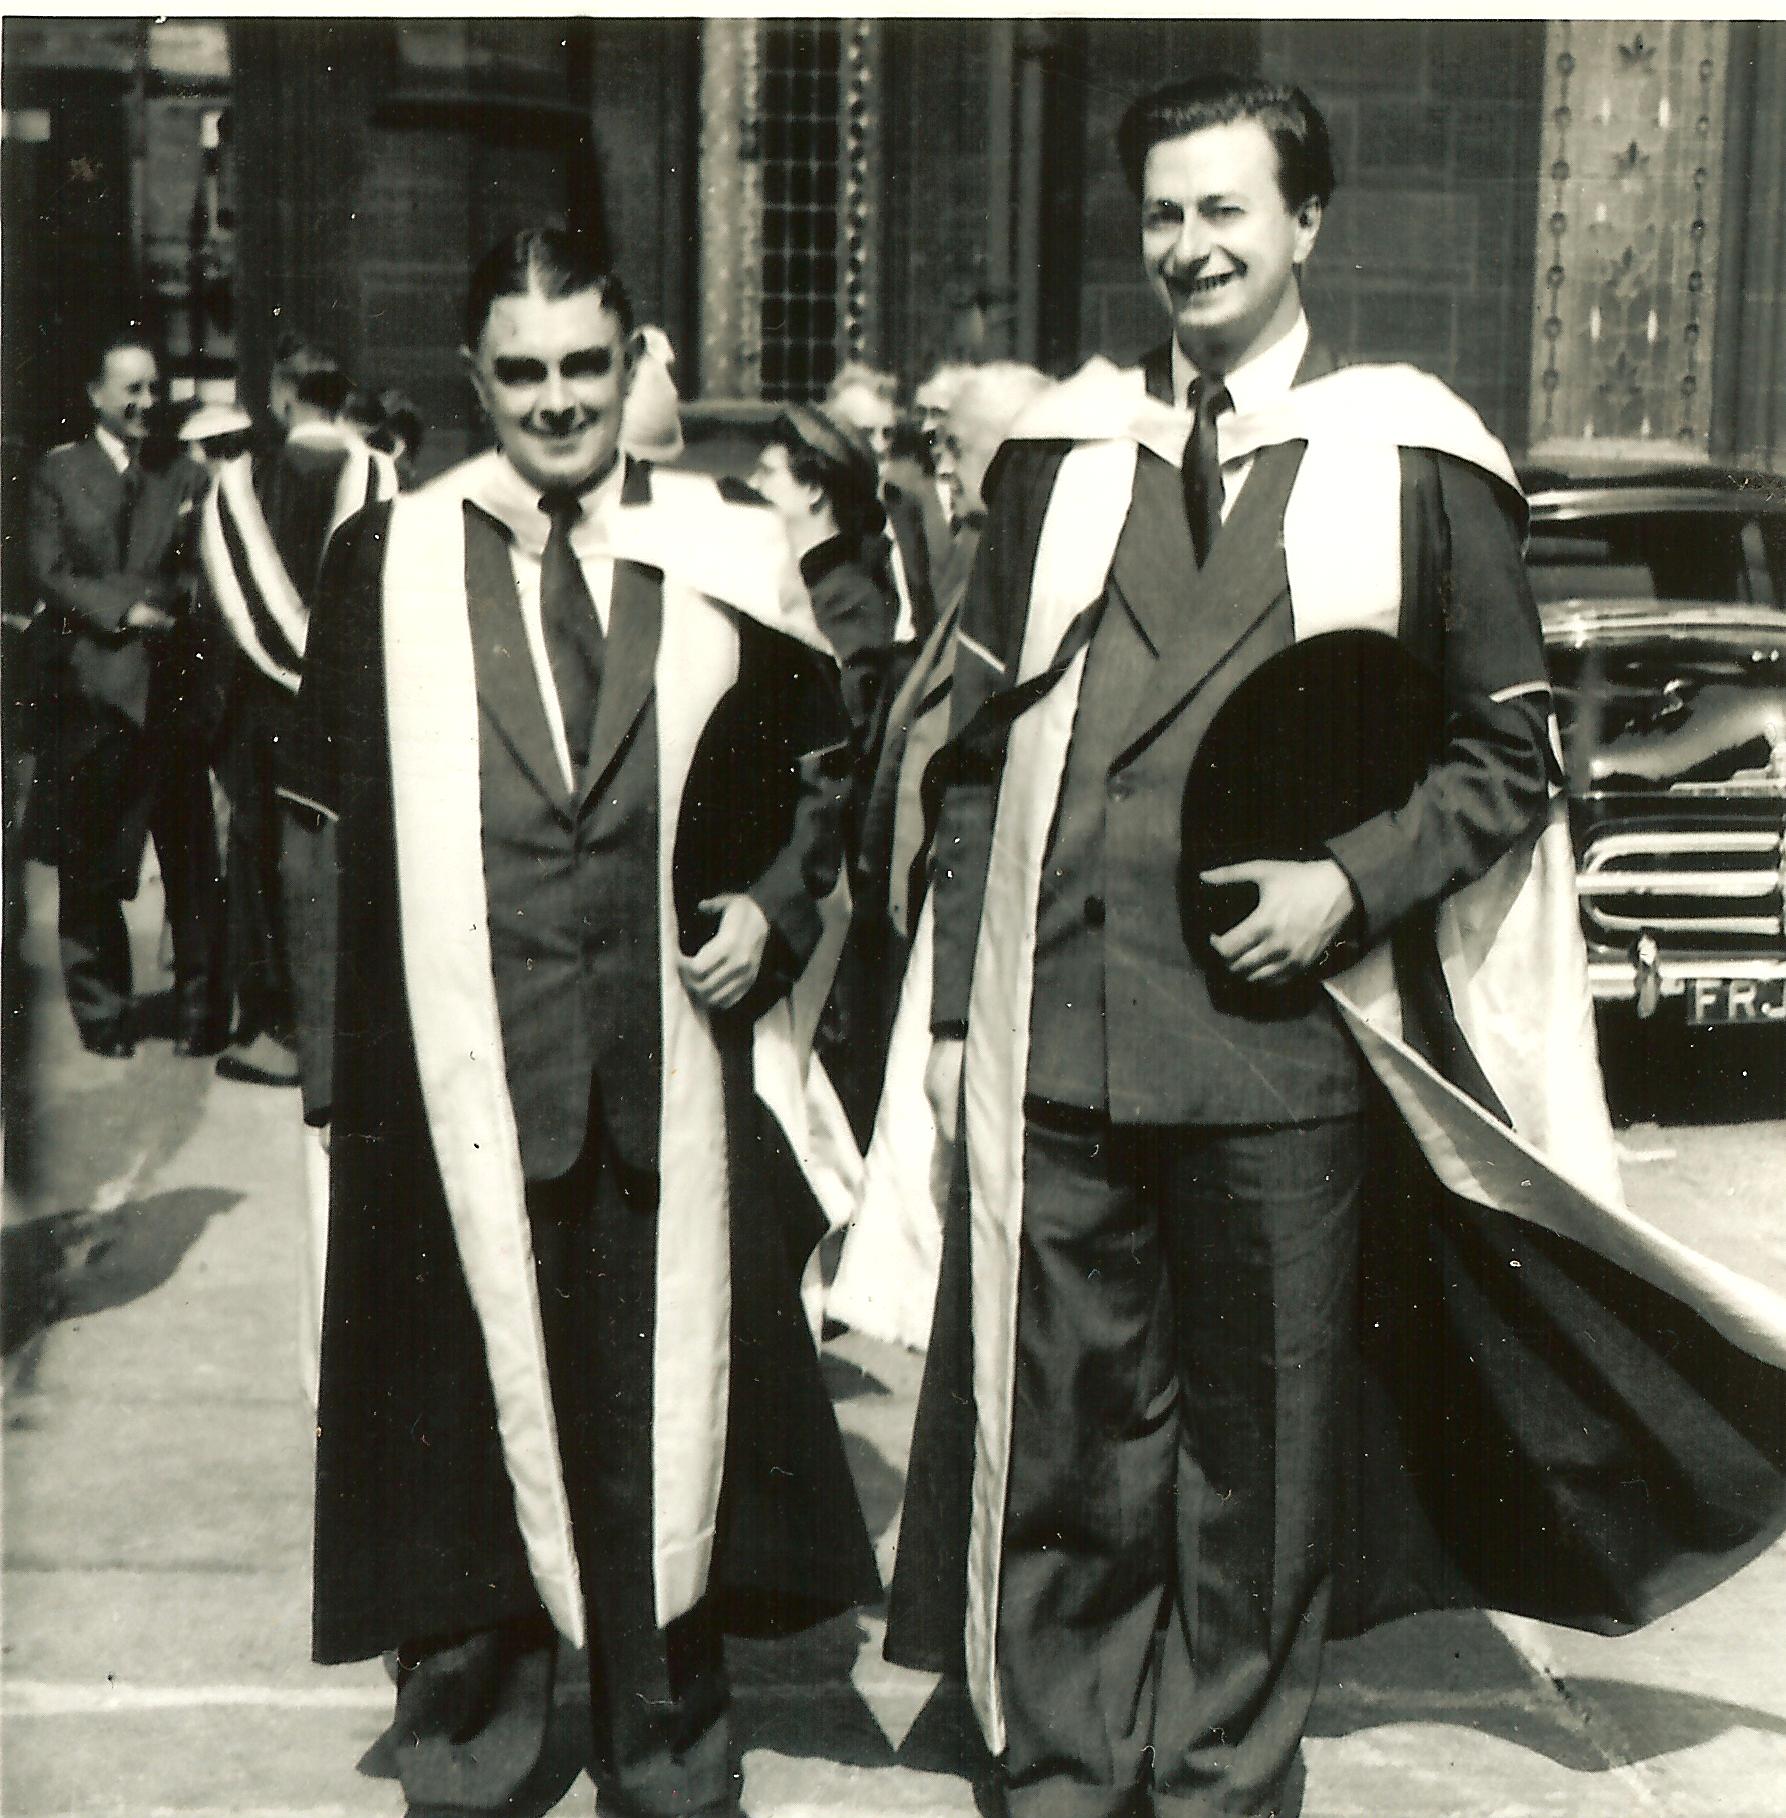 Victor Turner (esquerda) recebendo o diploma de doutorado na Universidade de Manchester, 1955. © Família de Victor Turner. Reprodução gentilmente autorizada.